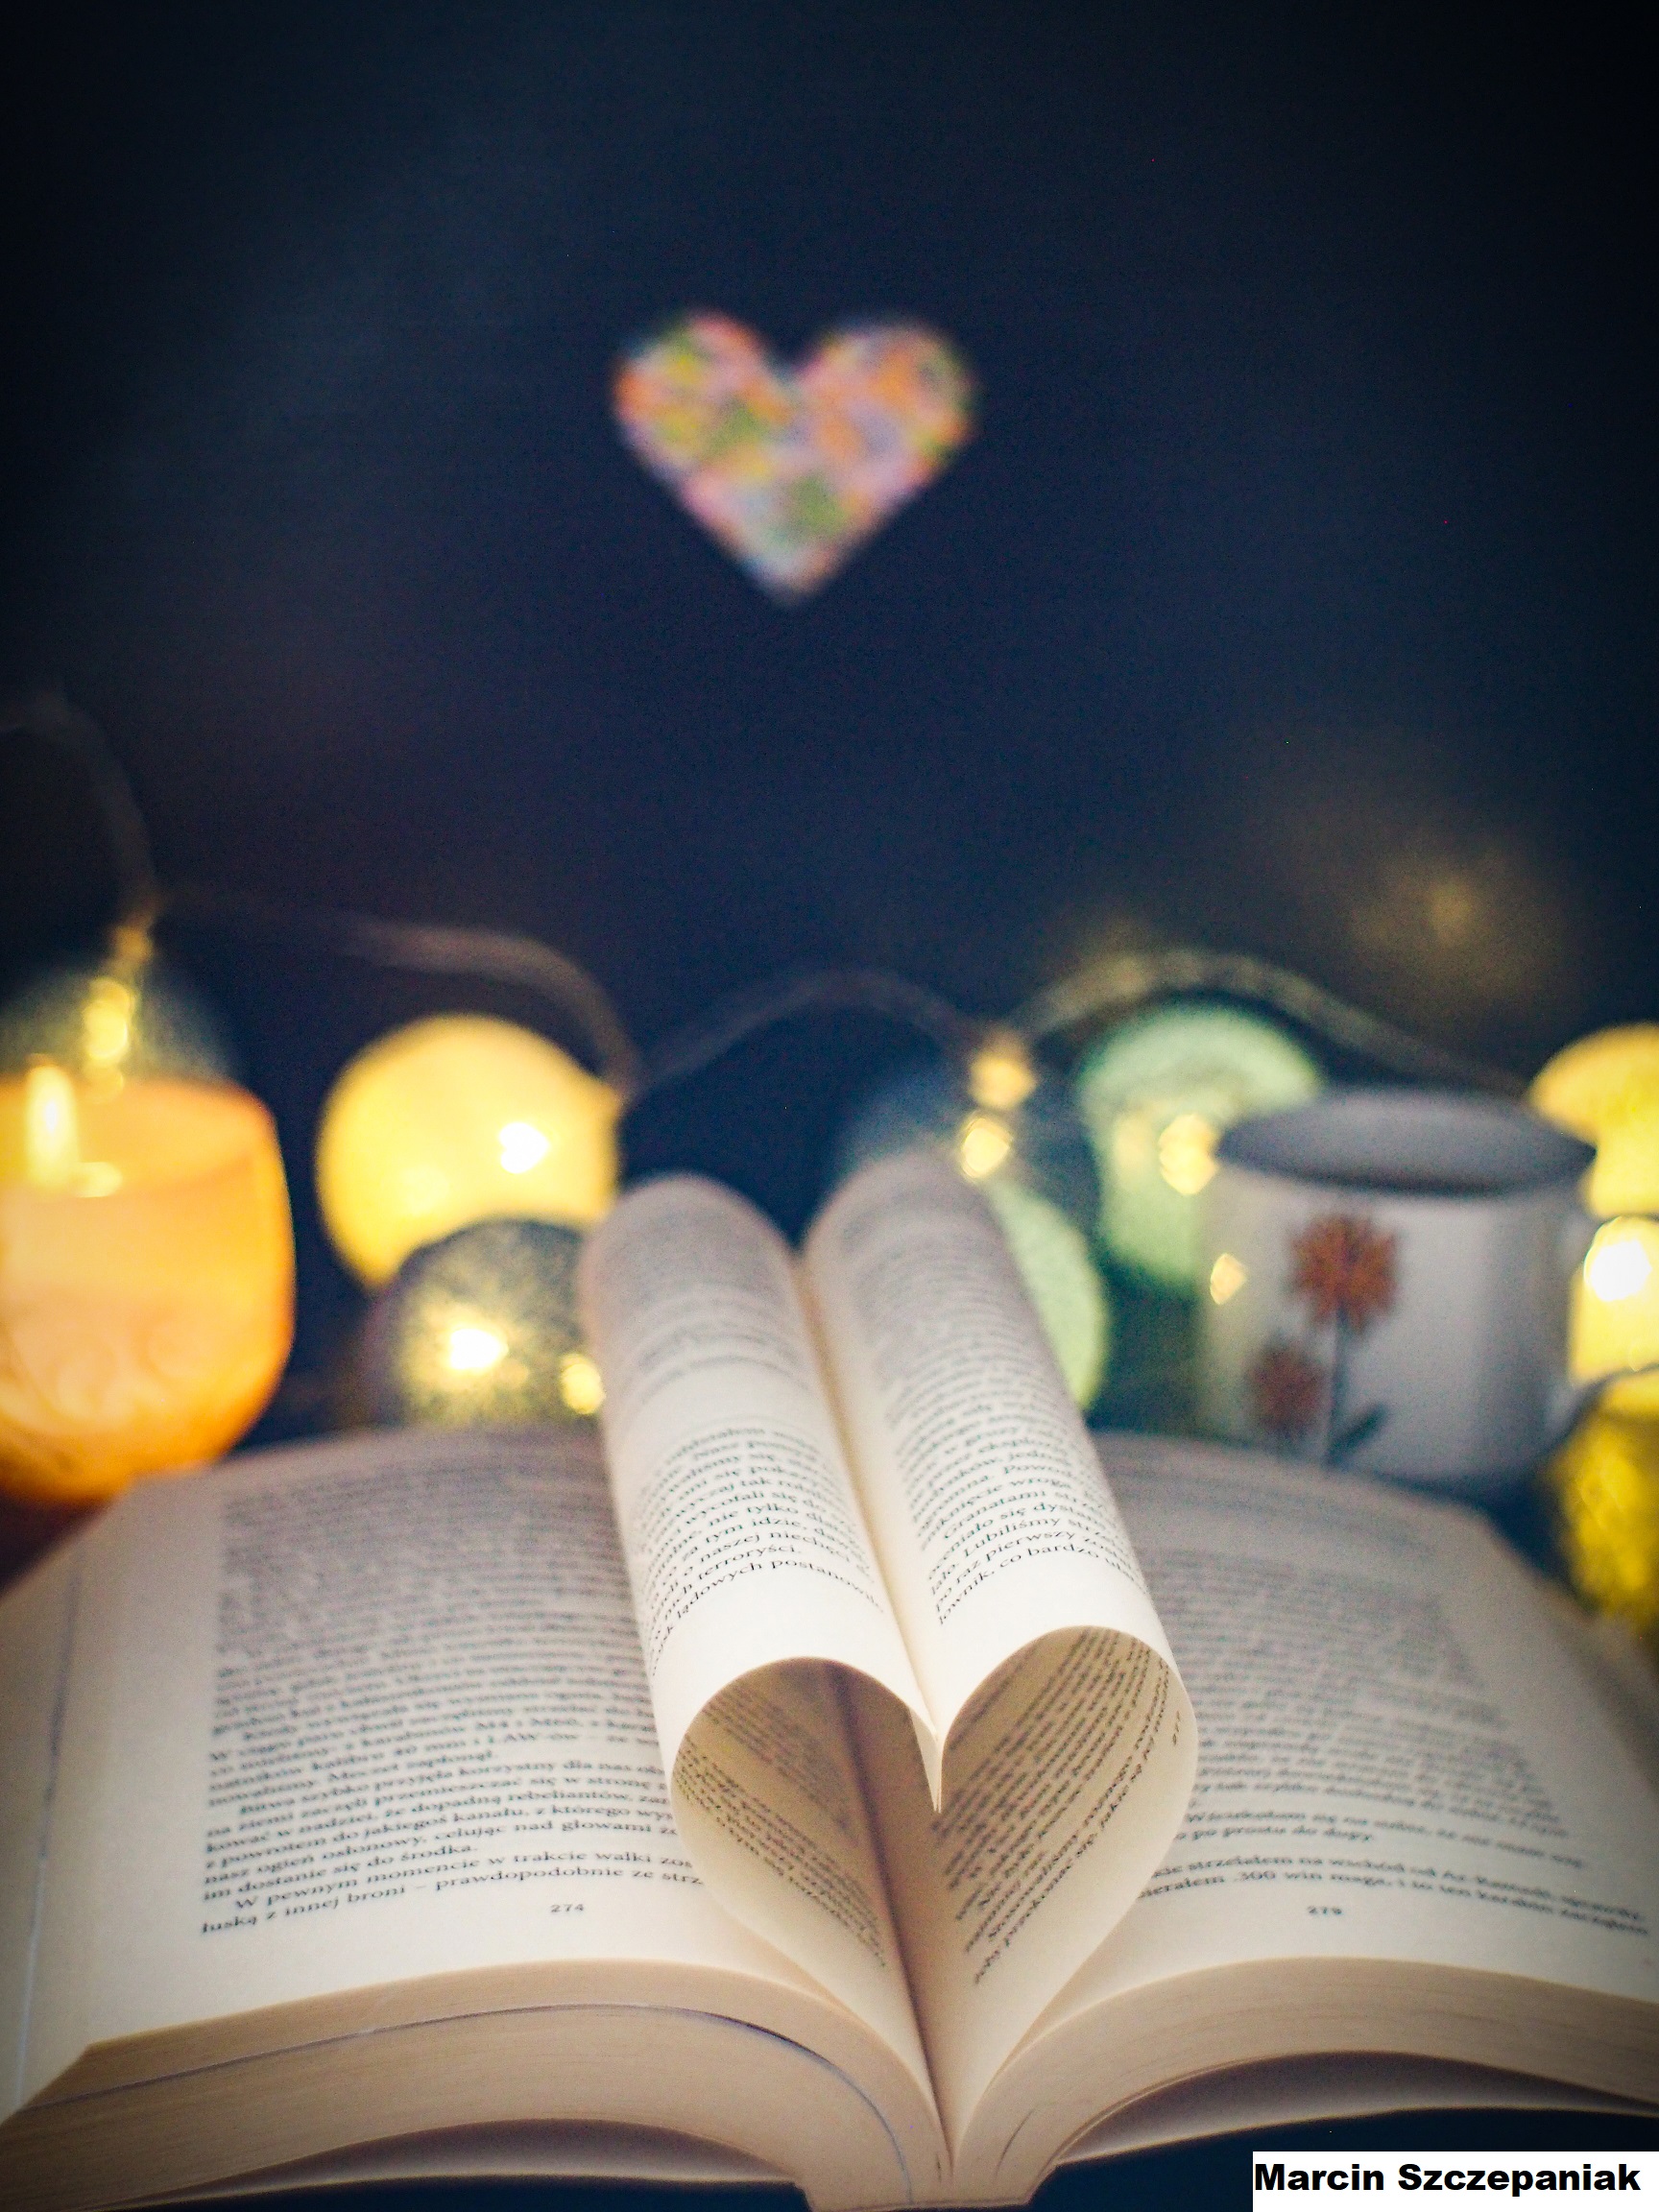 Zdjęcie przedstawia rozłożona książkę, w której środkowe kartki ułożone są w kształcie serca. W tle widać palące się lampki i światełka. 